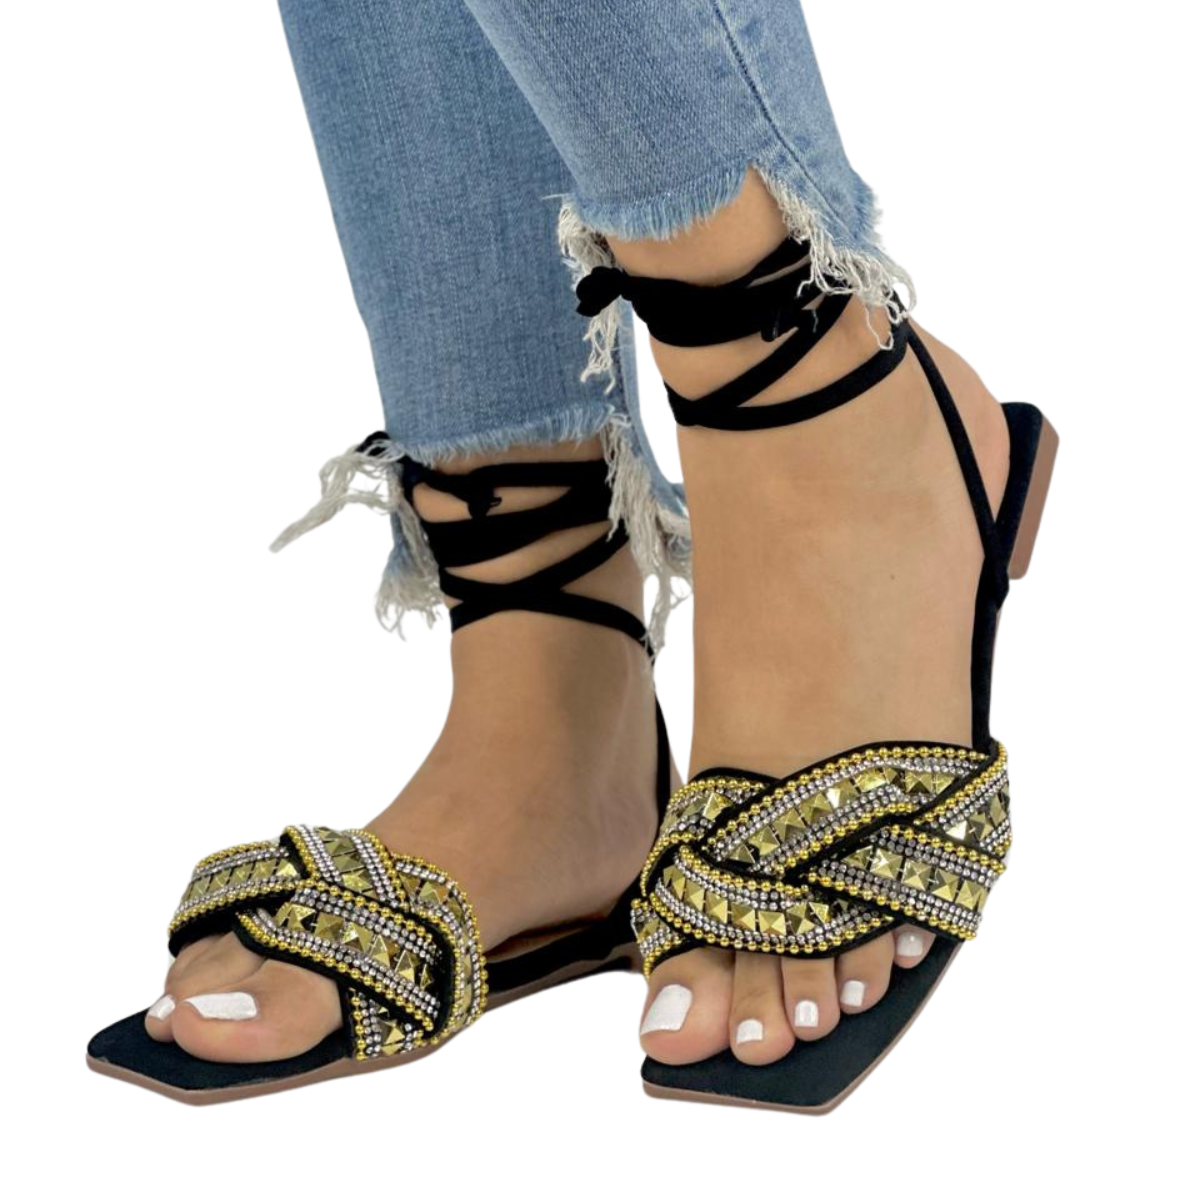 sandalias para mujer planas girasoles comprar en onlineshoppingcenterg Colombia centro de compras en linea